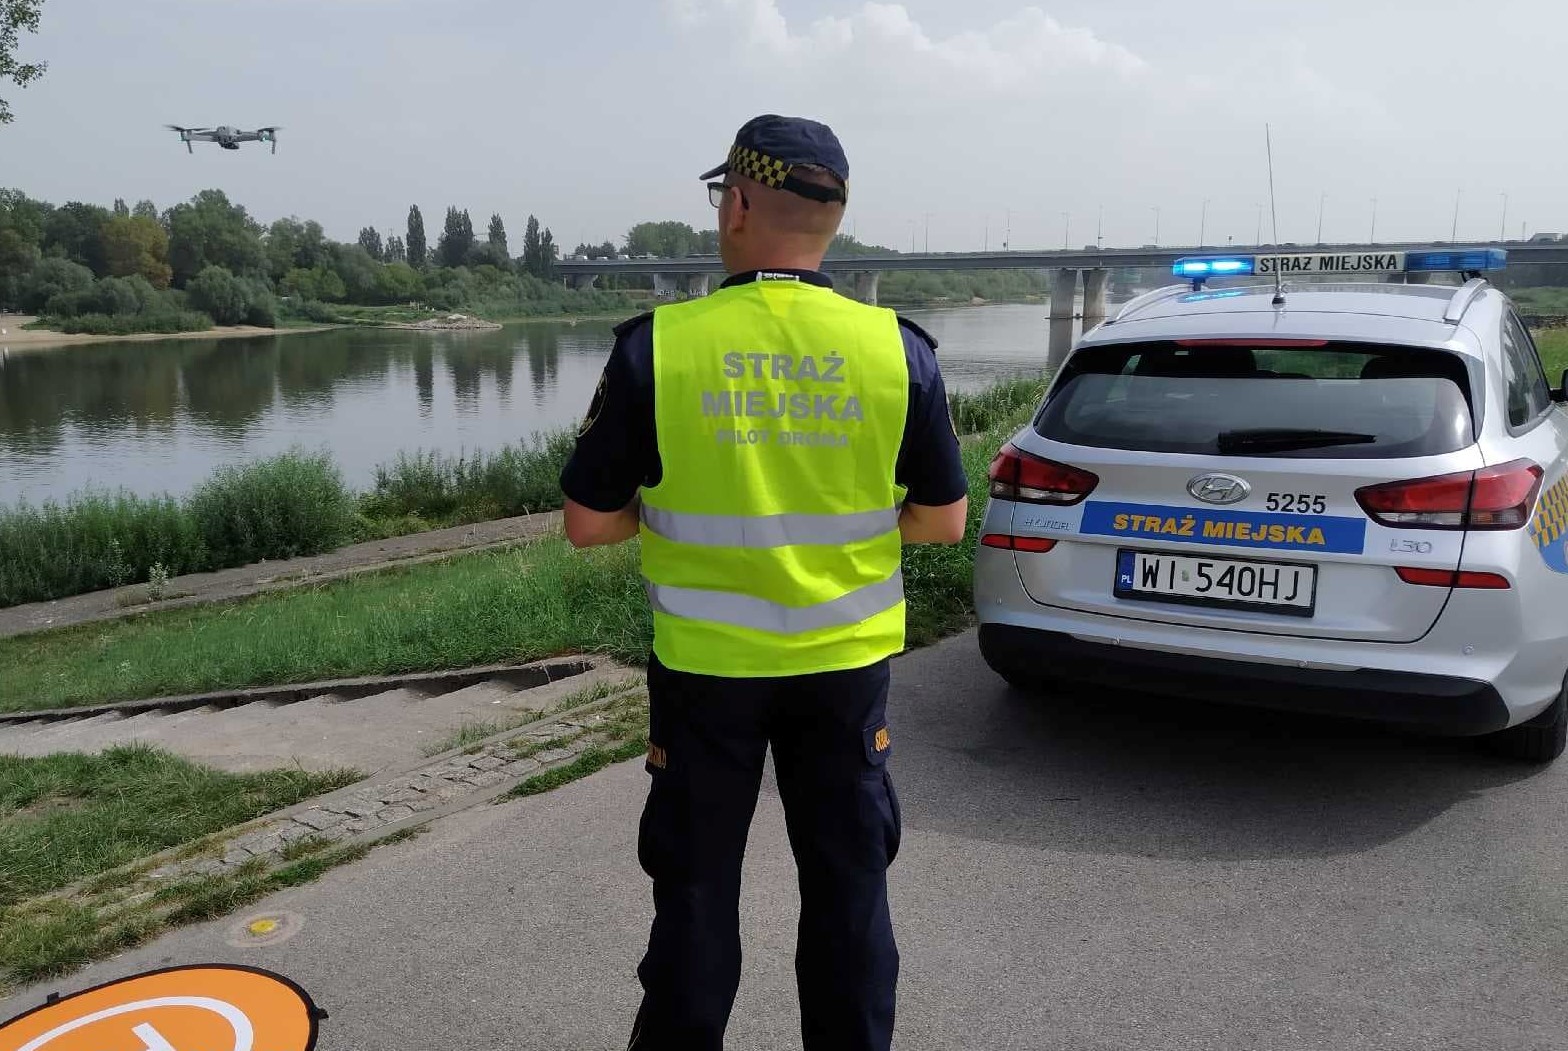 Strażnik miejski w trakcie oblotu dronem okolic jeziorka Gocławskiego. Dron w locie, strażnik z urządzeniem sterującym i radiowóz straży miejskiej nad wodą.